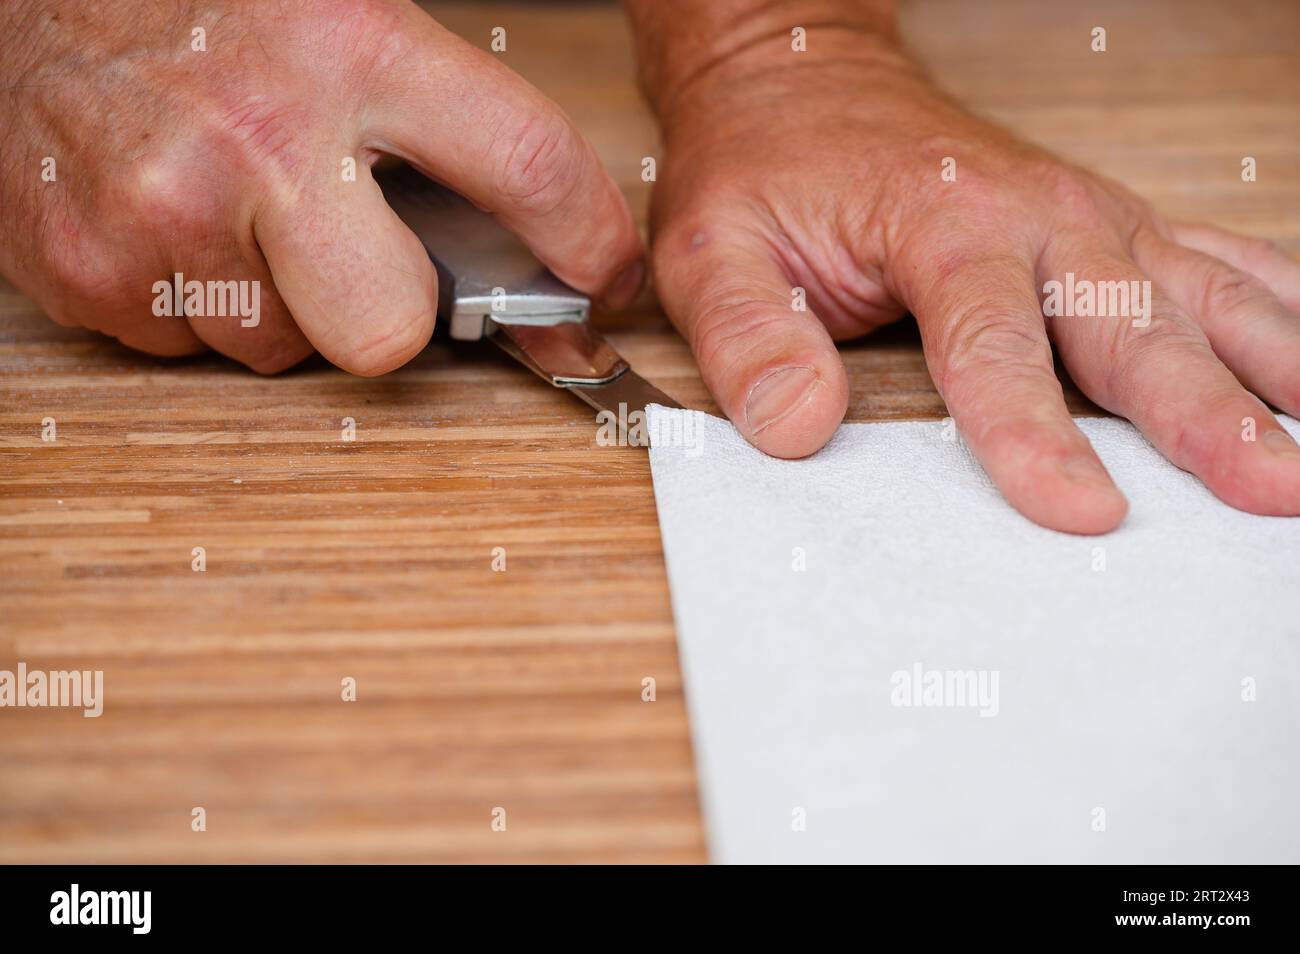 Les travailleurs préparent le papier peint pour l'accrocher. Mesurer un rouleau de papier peint, couper le papier peint. Banque D'Images